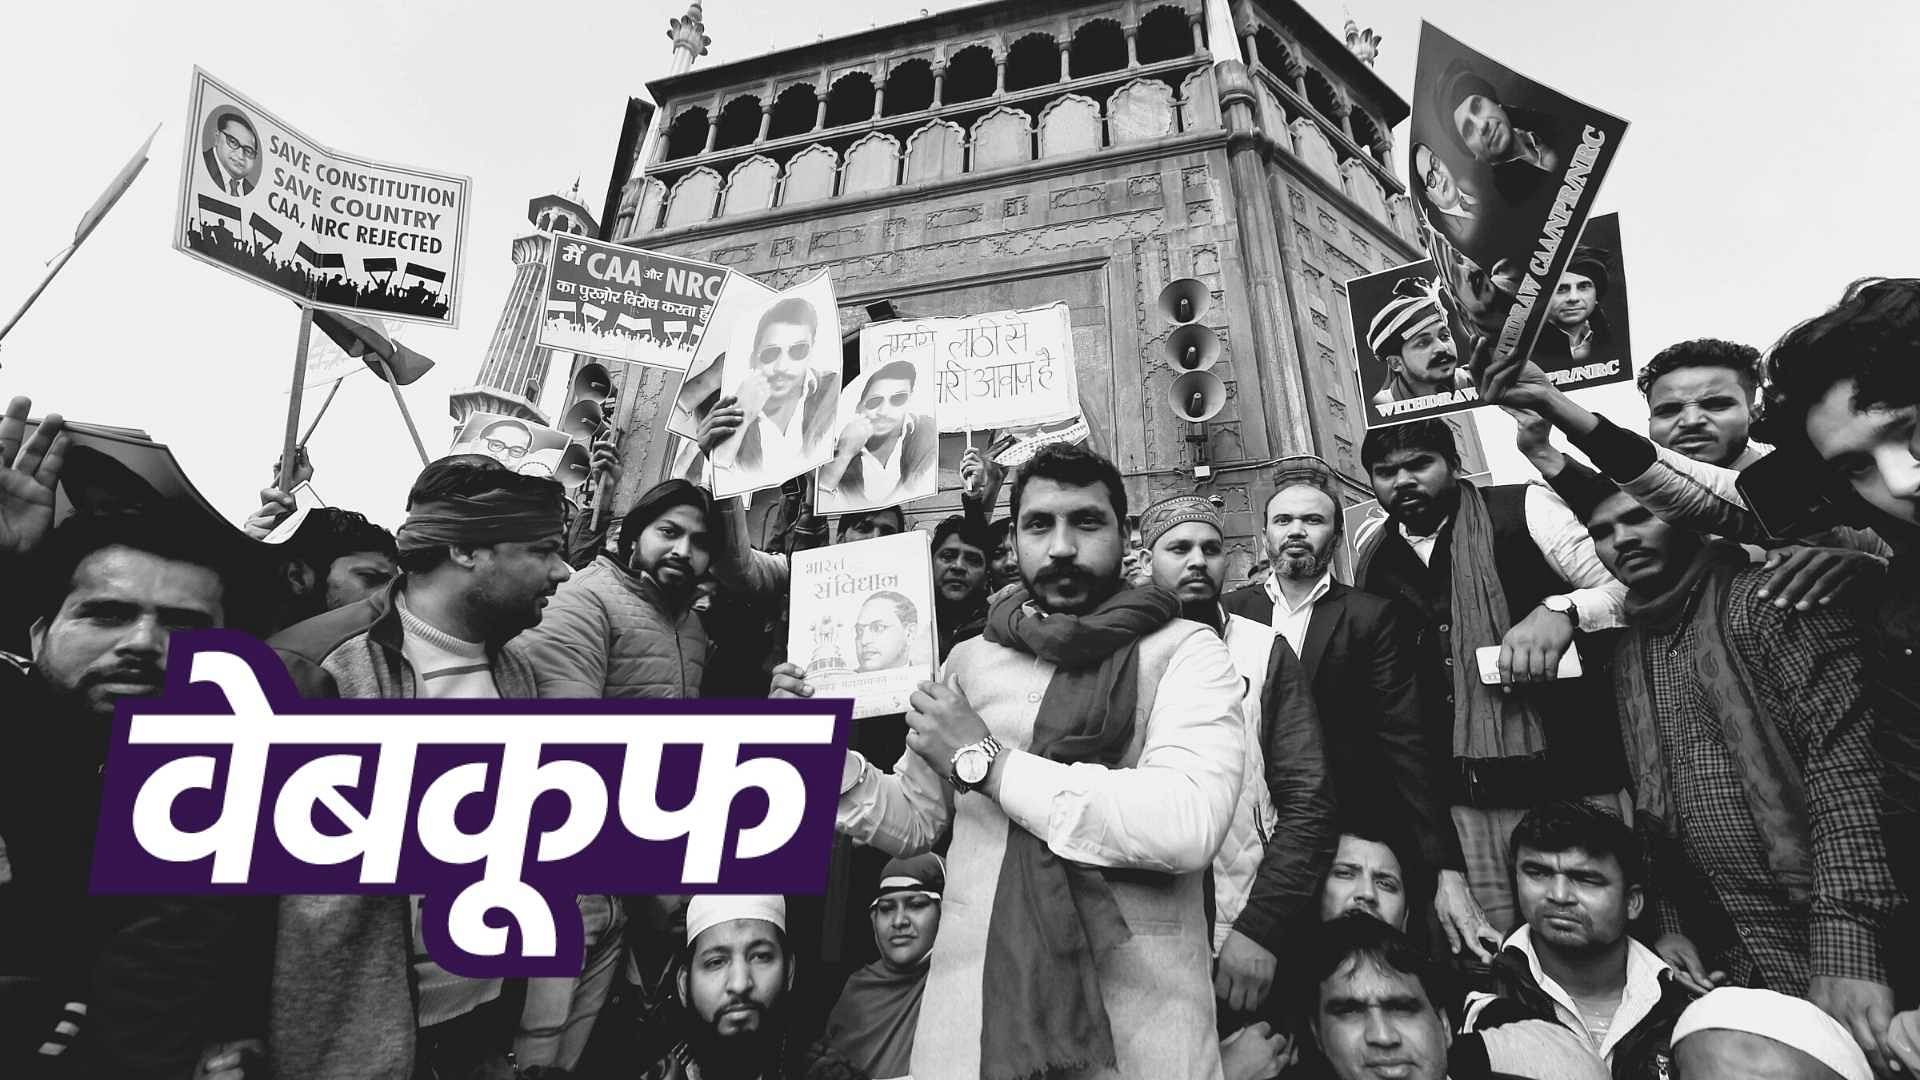 हाथ में भारत के संविधान की किताब लिए जामा मस्जिद पहुंचे भीम आर्मी चीफ चंद्रशेखर आजाद